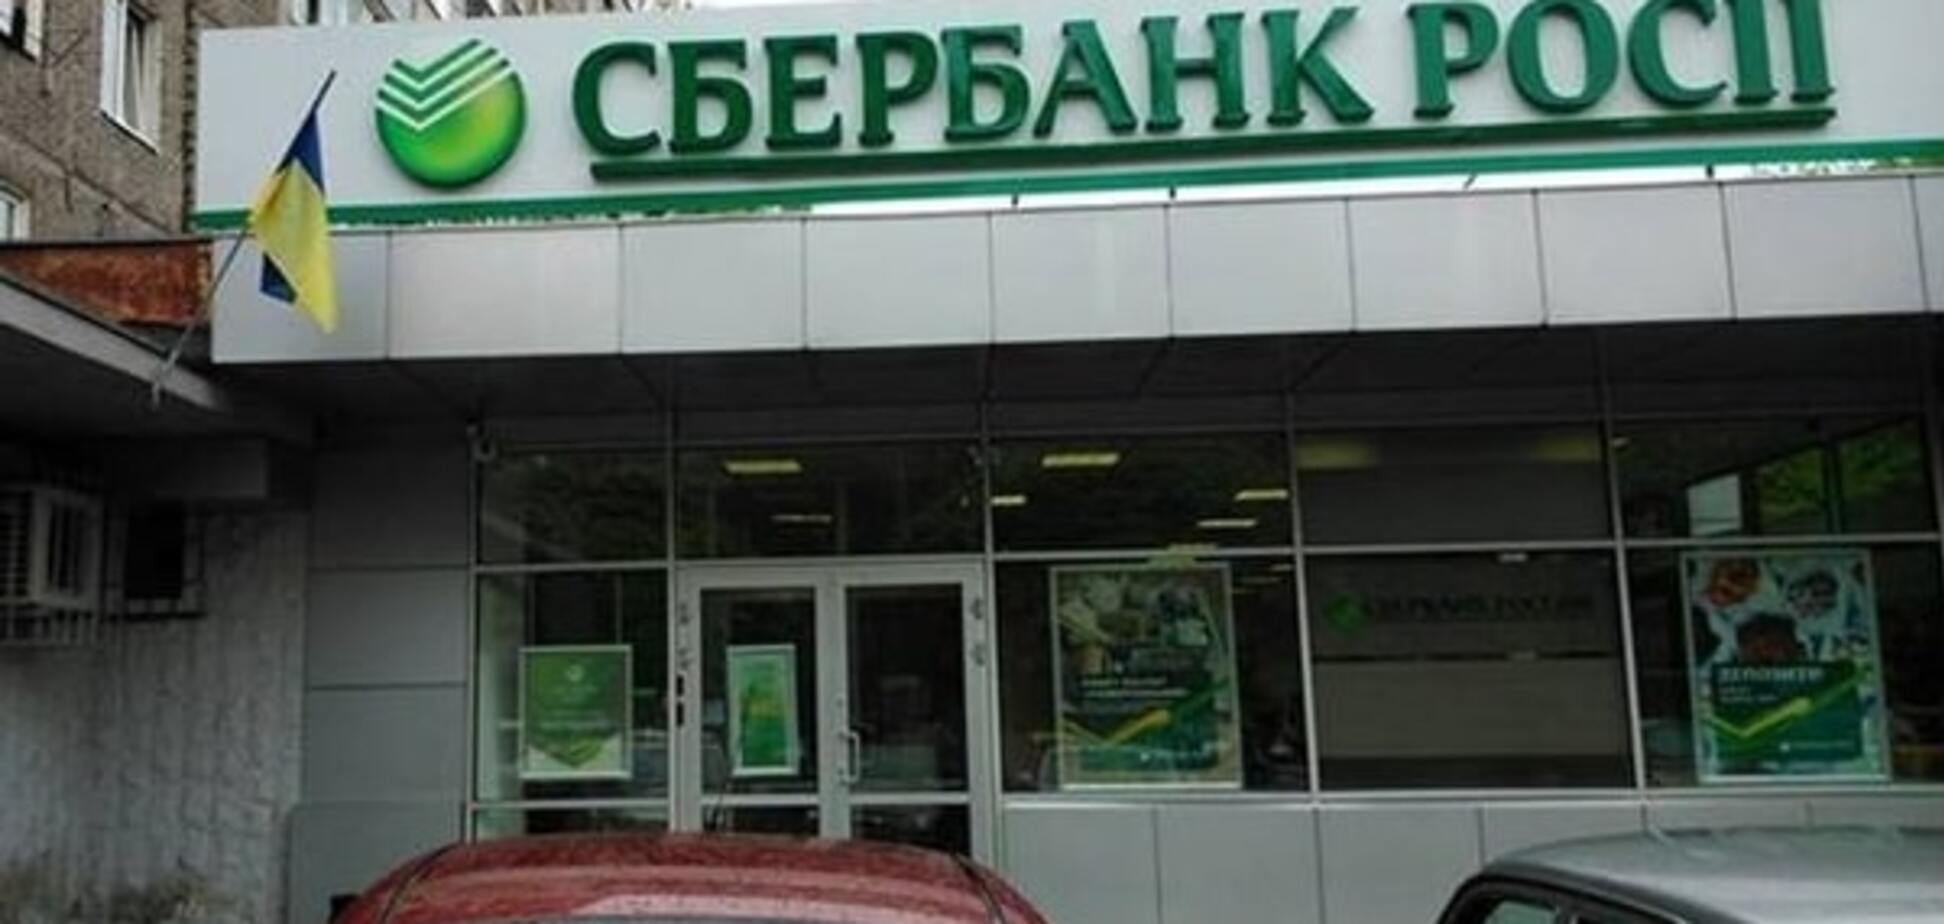 Порошенку запропонували заборонити 'Сбербанк Росії' в Україні